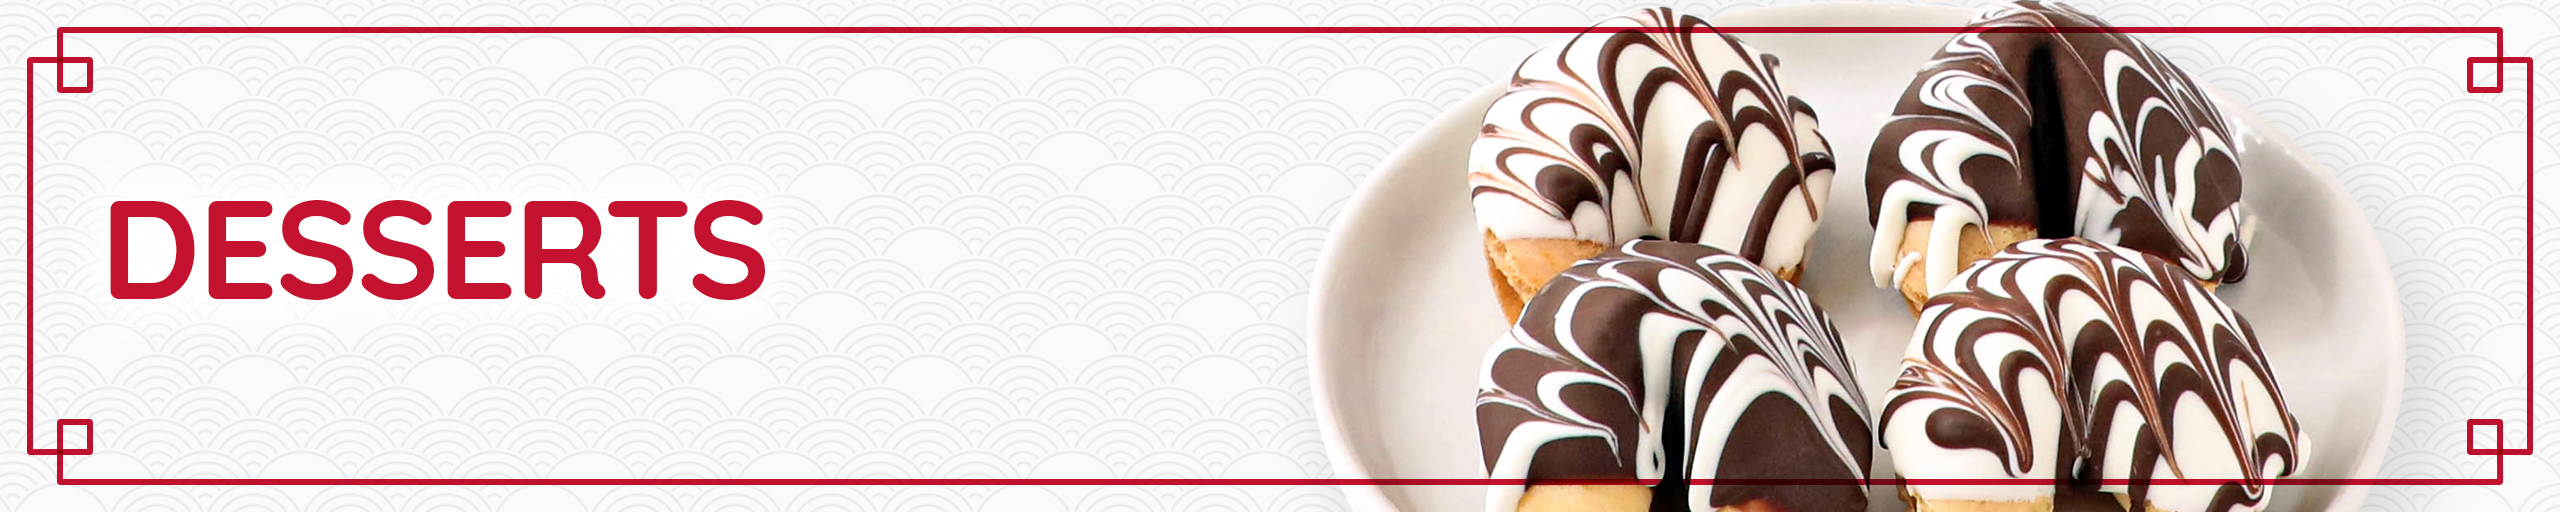 Desserts web banner